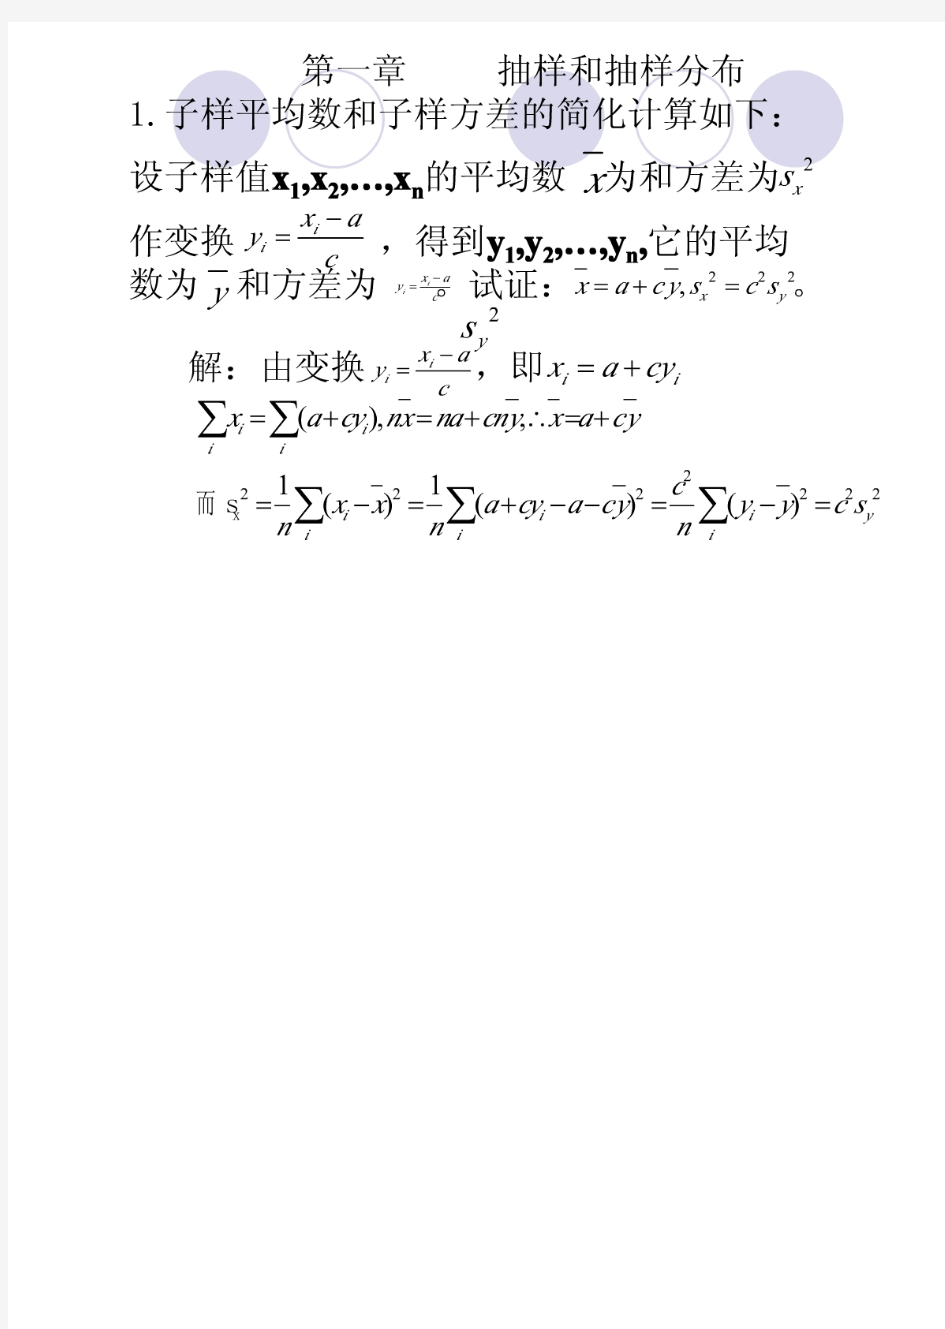 数理统计答案(汪荣鑫)-含书签